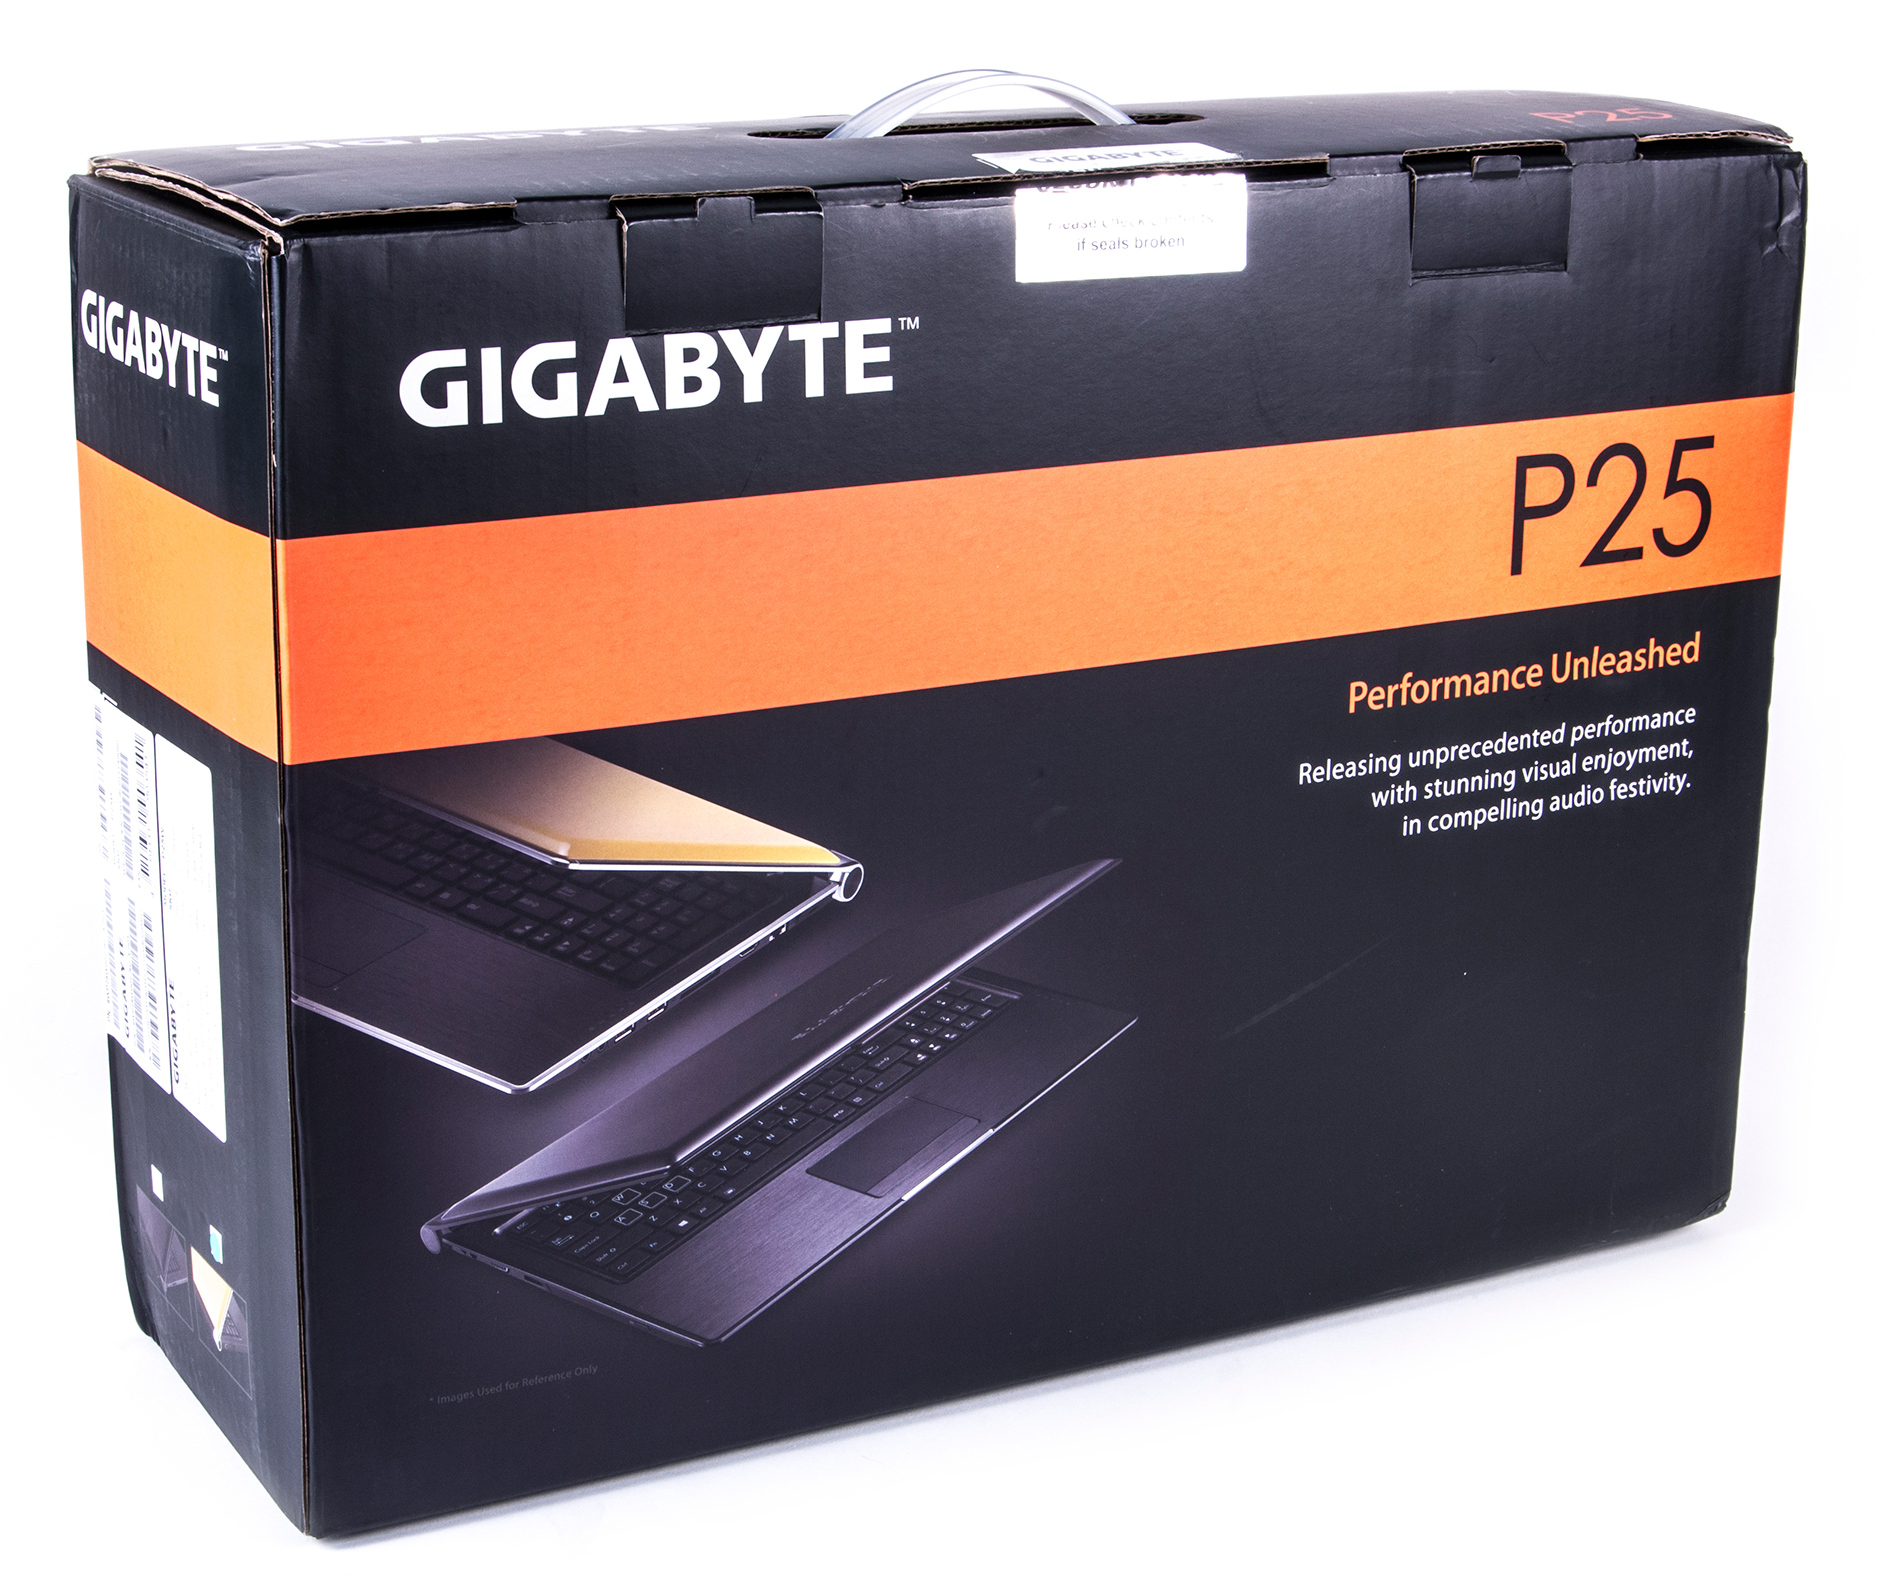 Купить Ноутбук Gigabyte P57k